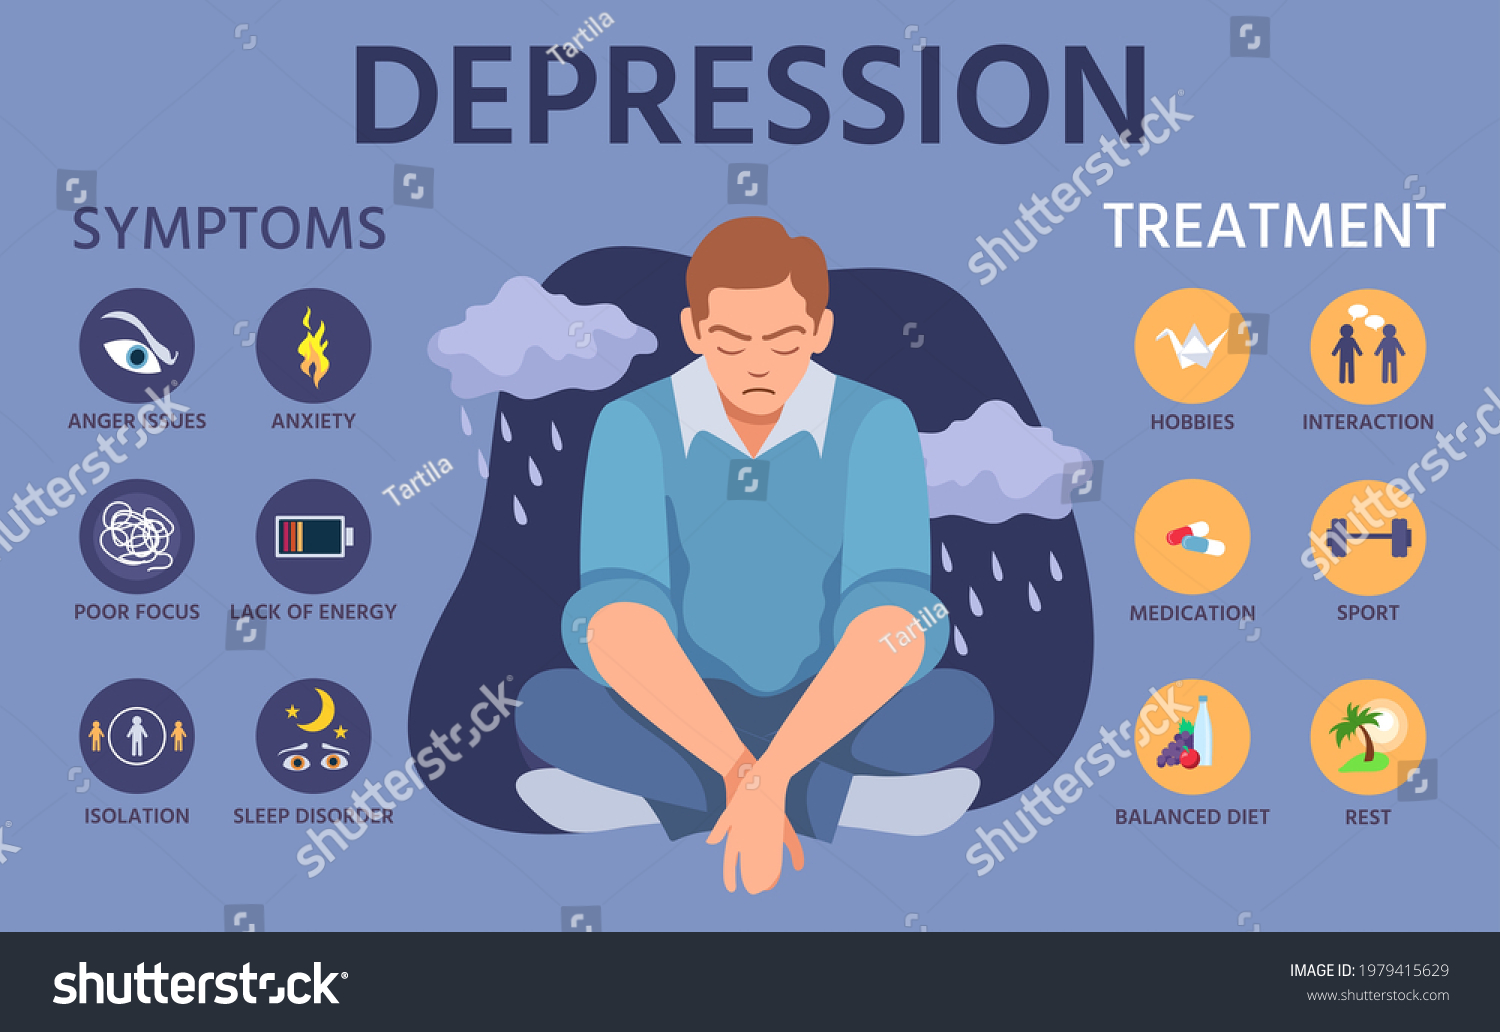 4457 Imágenes De Infografia Depresion Imágenes Fotos Y Vectores De Stock Shutterstock 3960